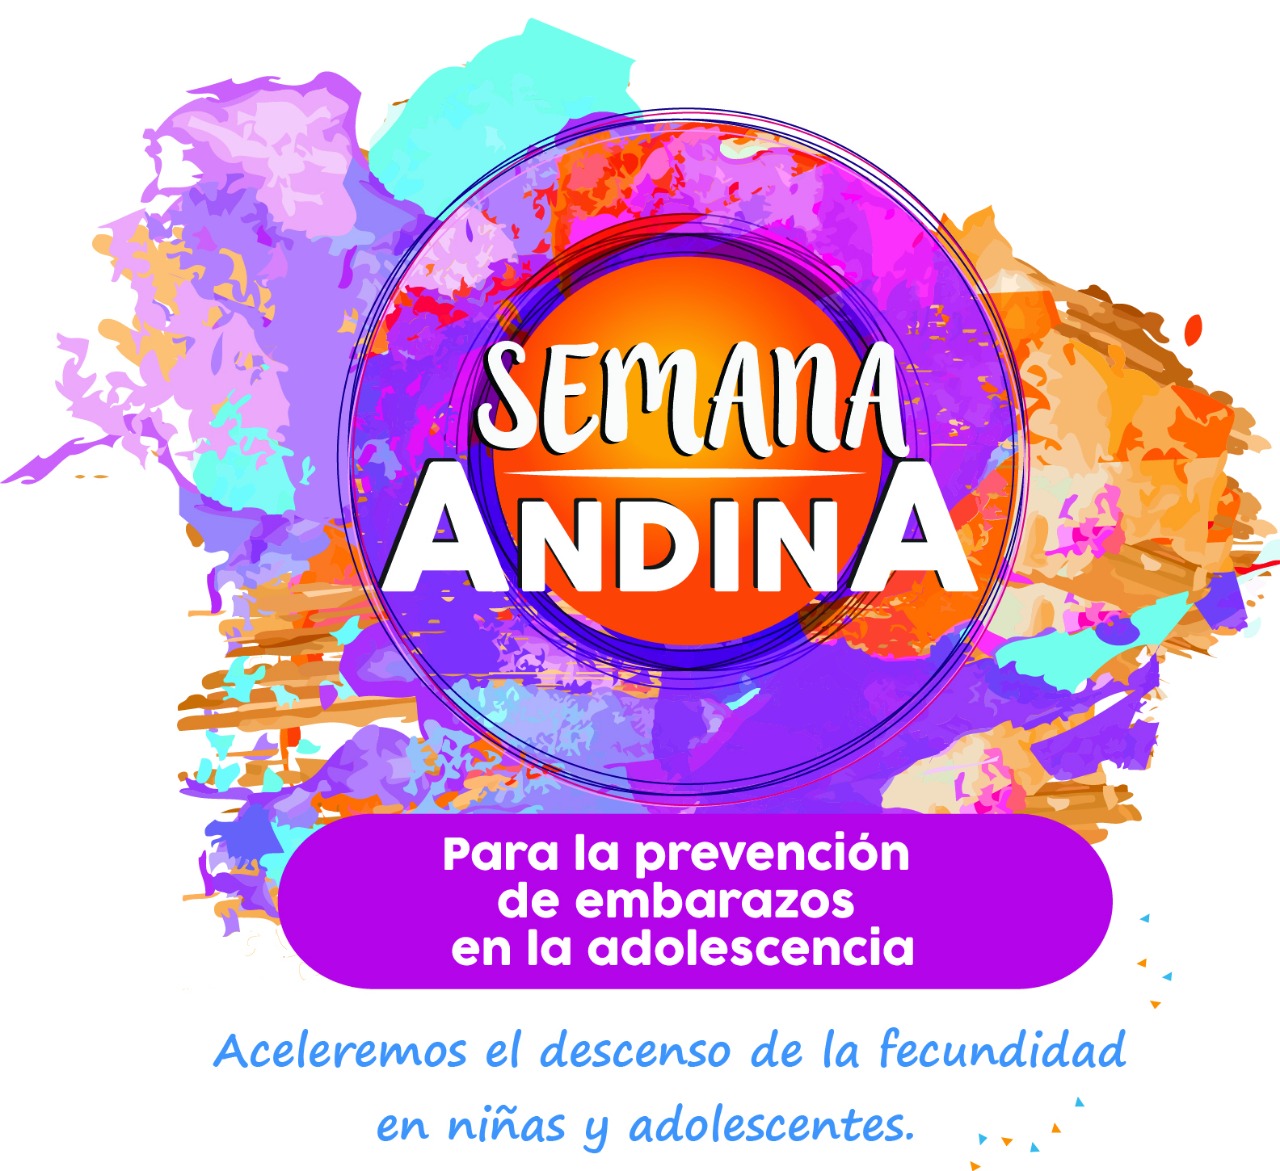 La ESE Distrital celebrará Semana Andina para la Prevención de Embarazos en Adolescentes